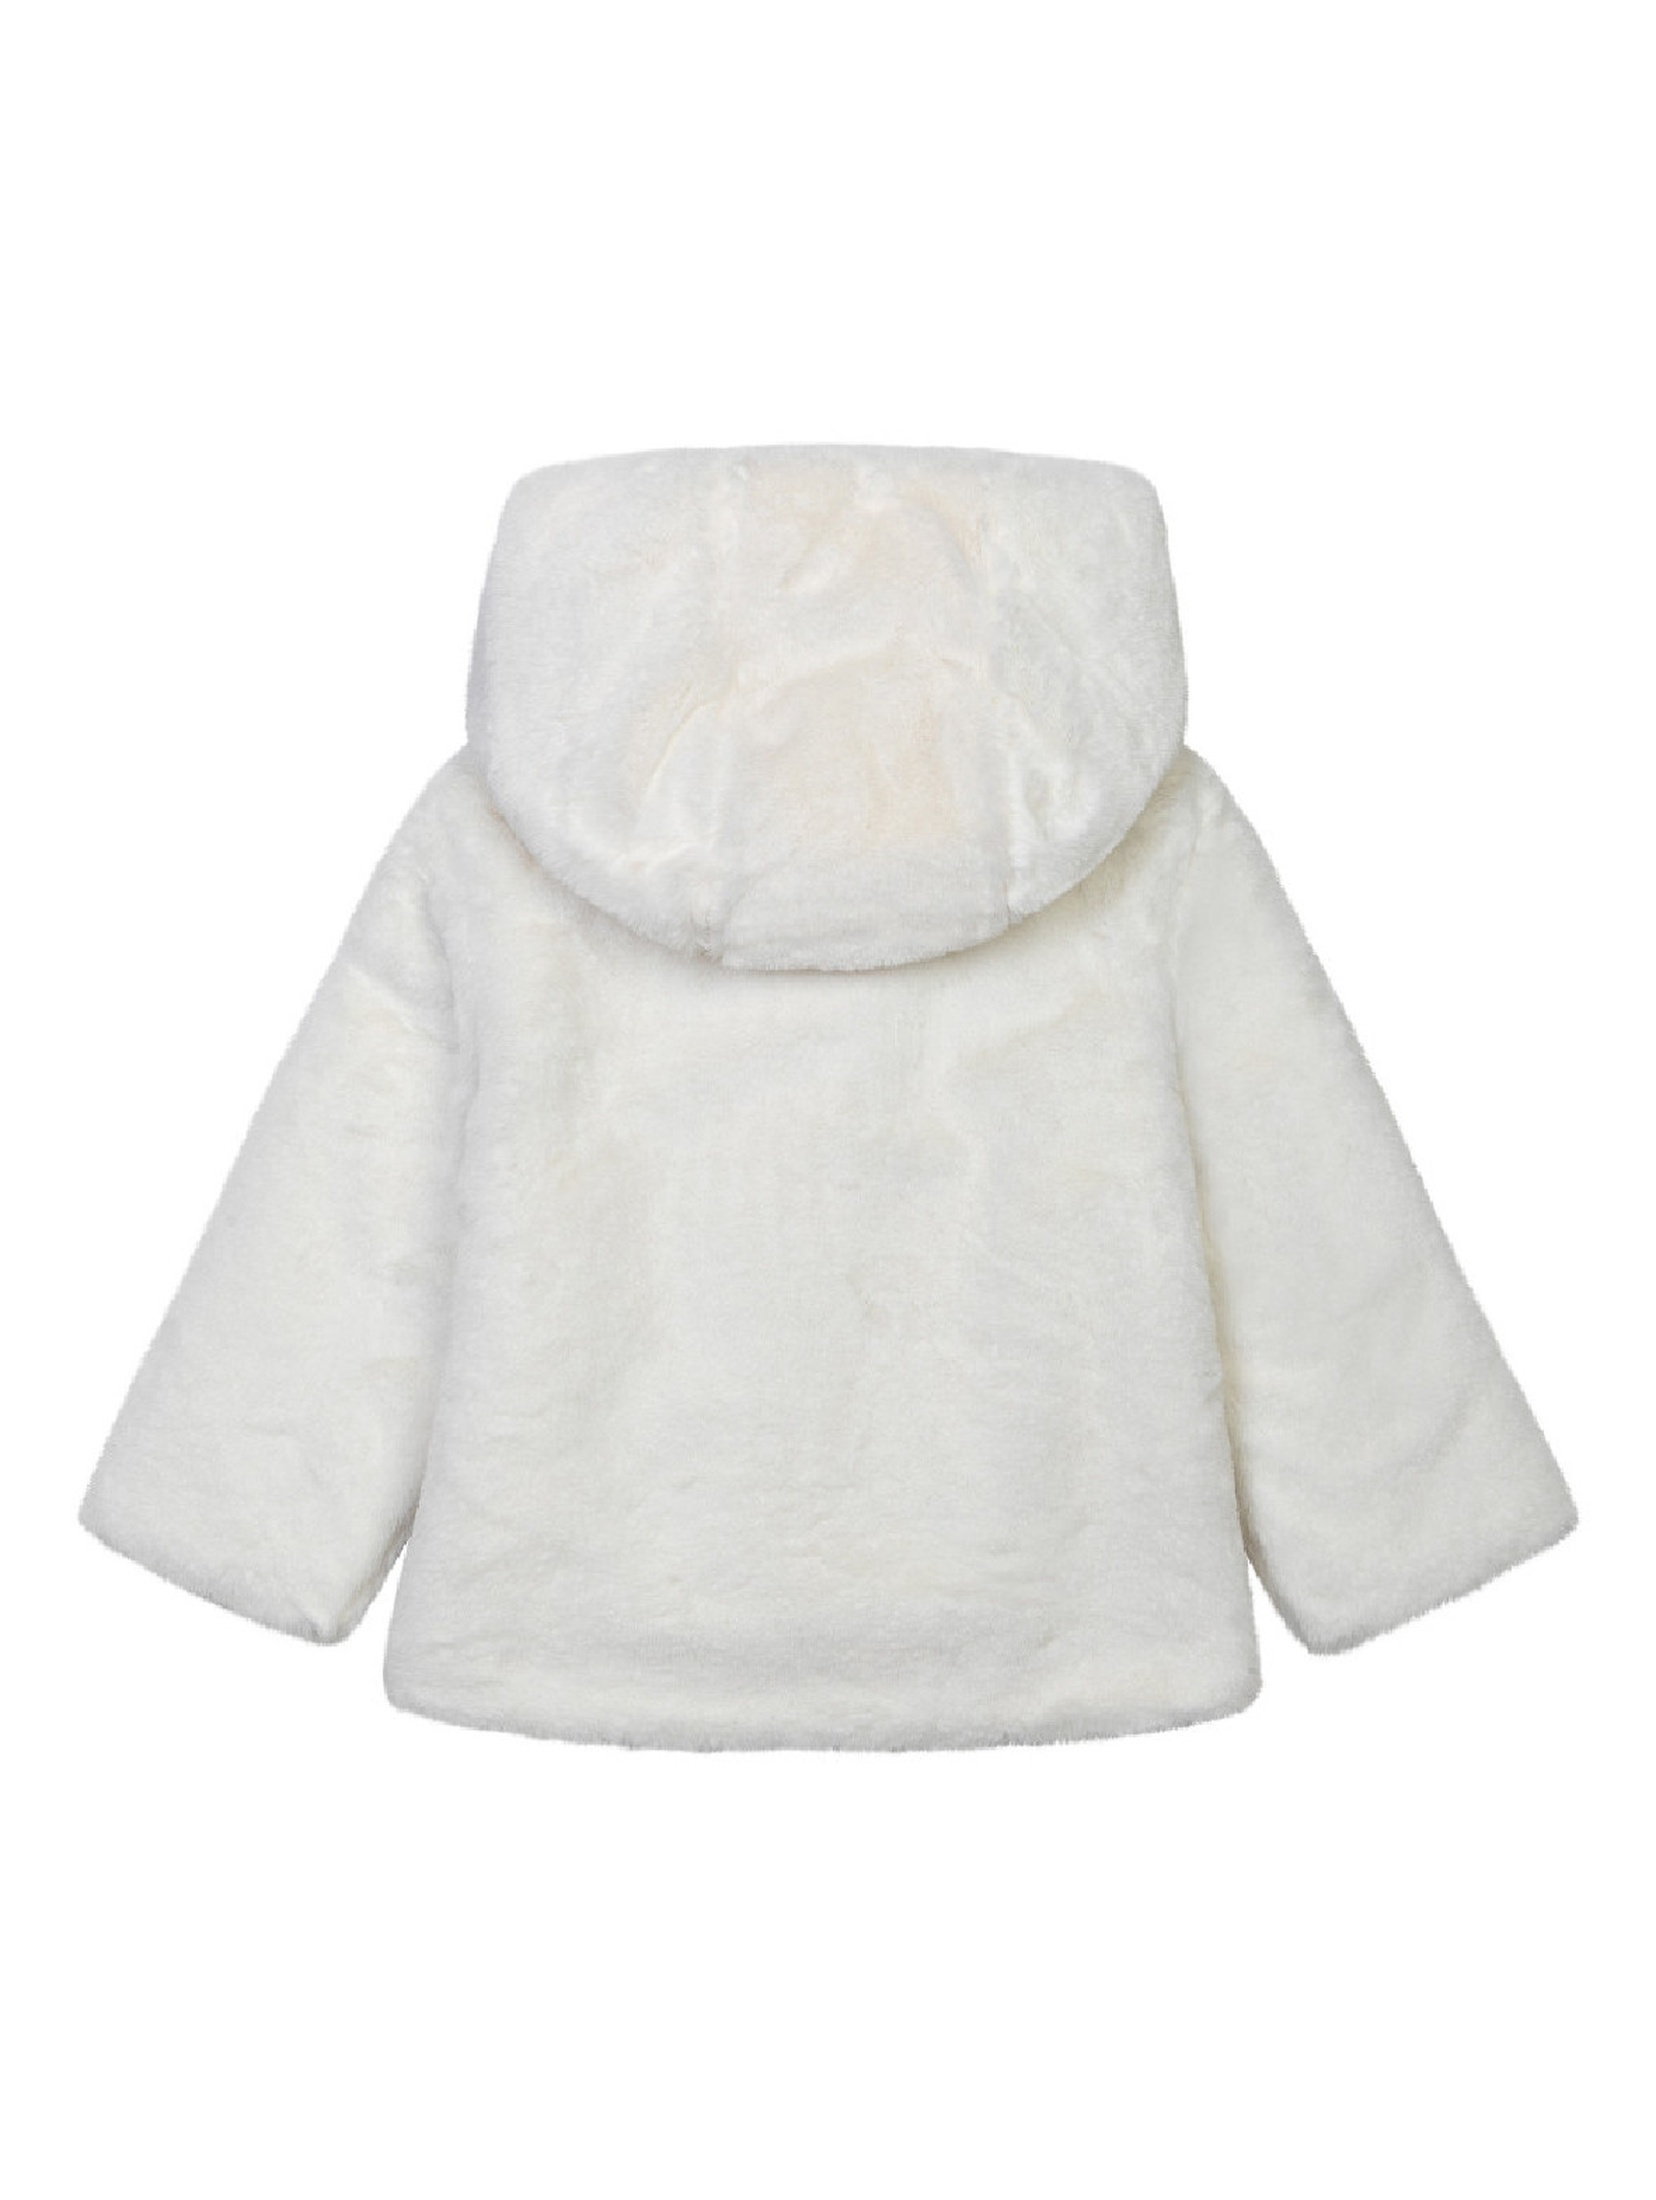 Ocieplany płaszcz niemowlęcy z kapturem - biały